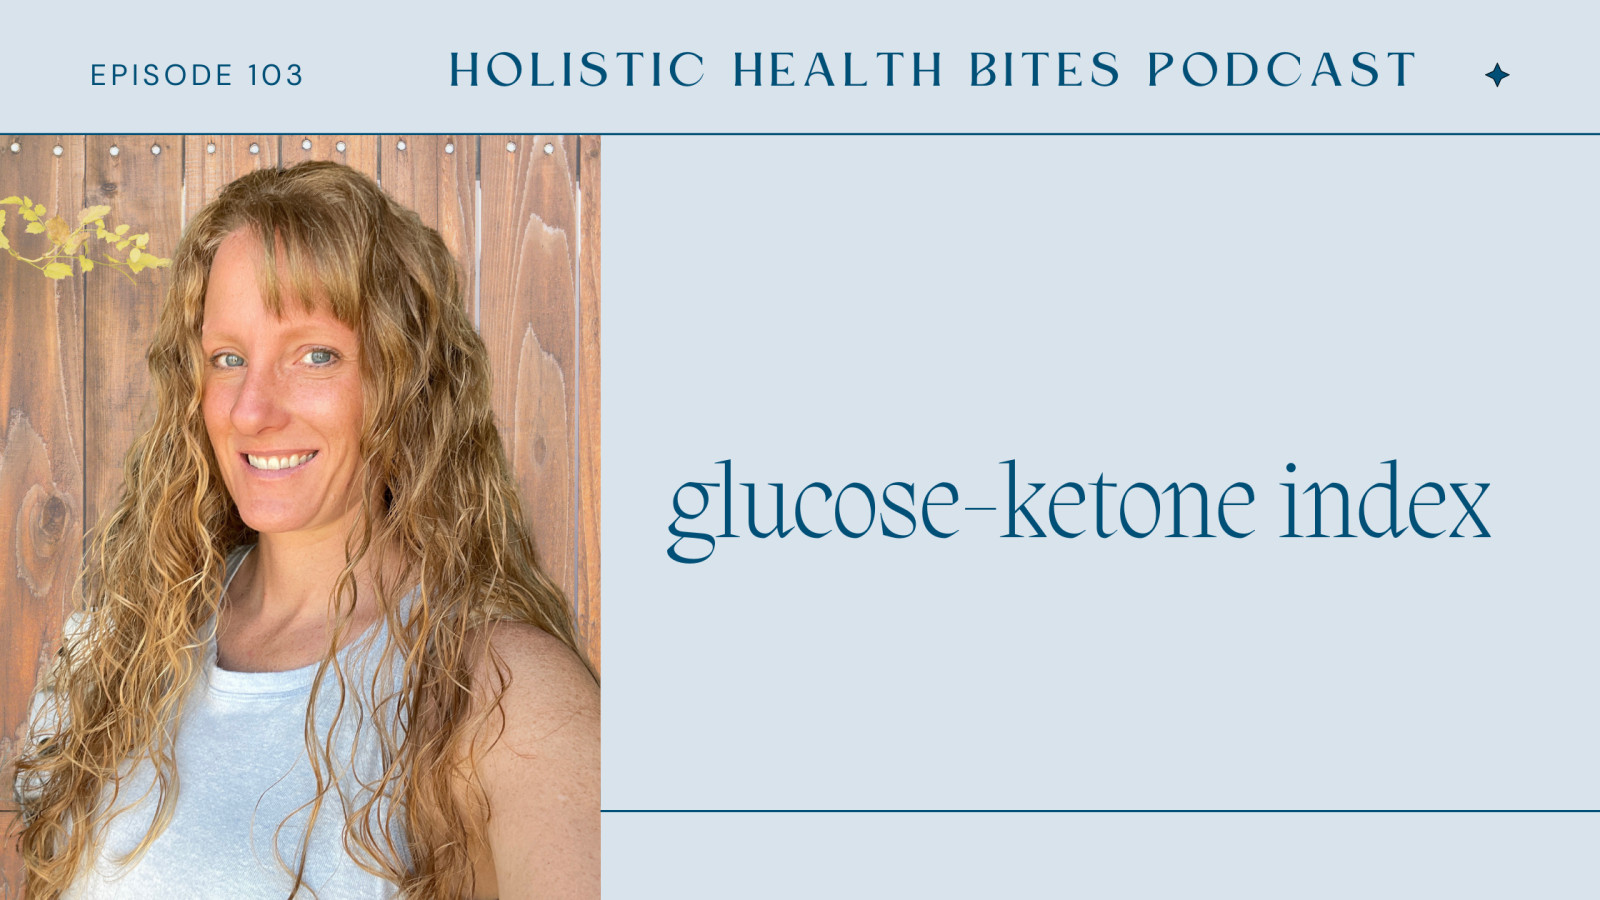 Glucose-Ketone Index